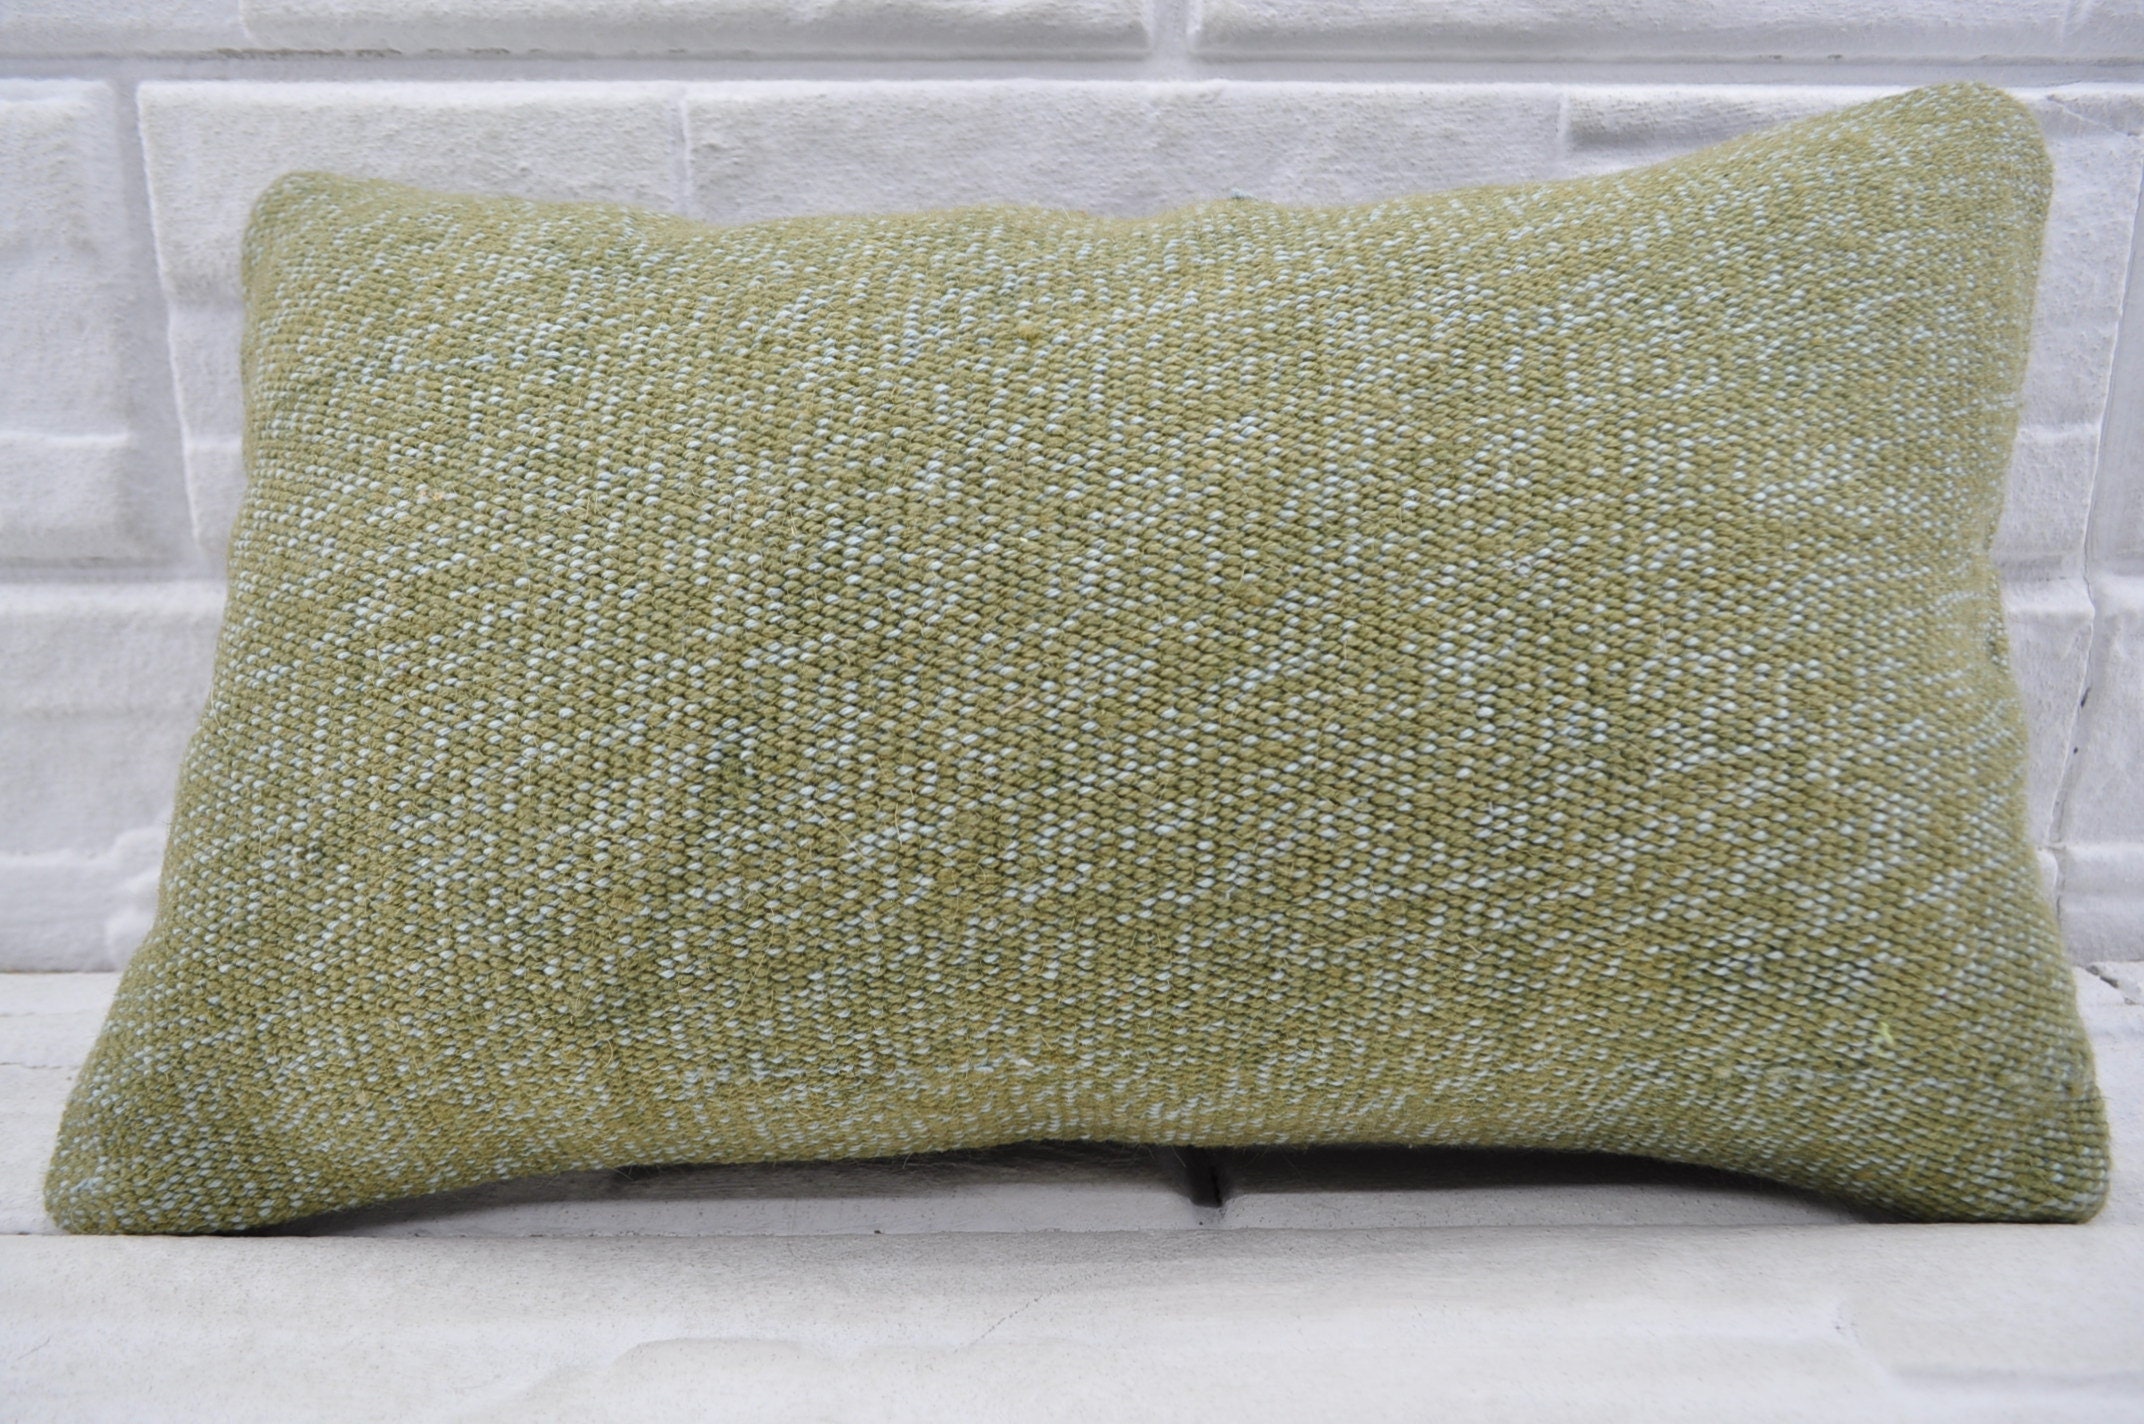 kilim pillow 12x20 cushion cover 12x20 antique natural throw pillow cover ethnic pillow lumbar pillow cover No 2428 hemp pillow